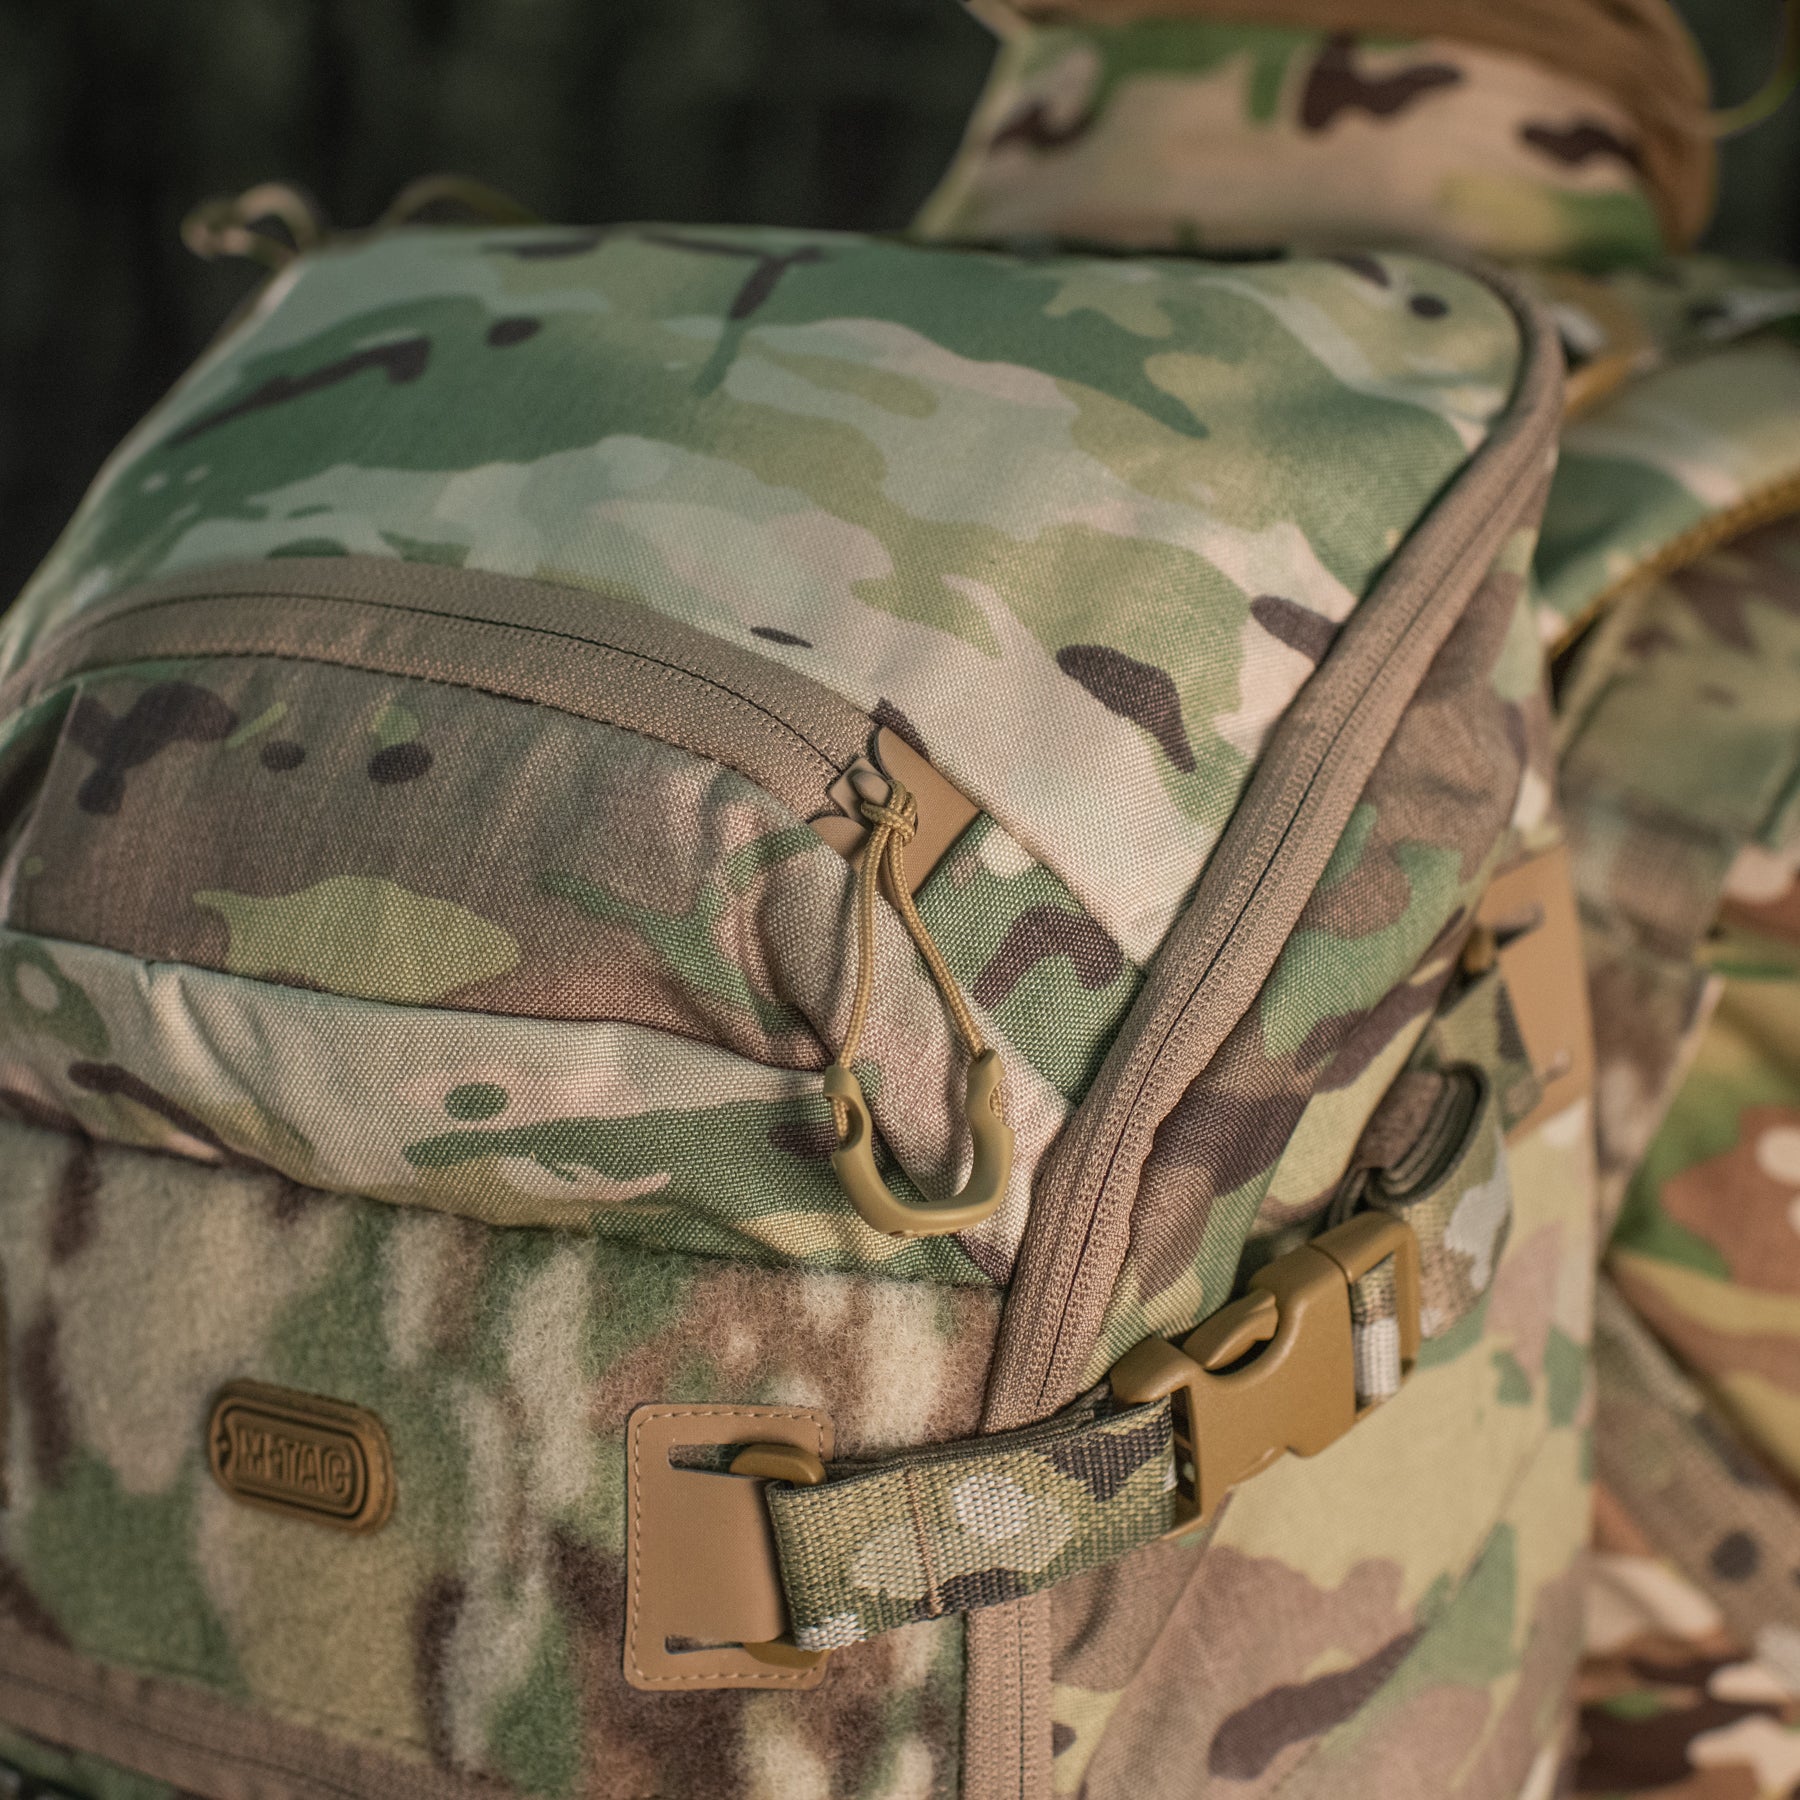 M-Tac Backpack Elite Gen.II